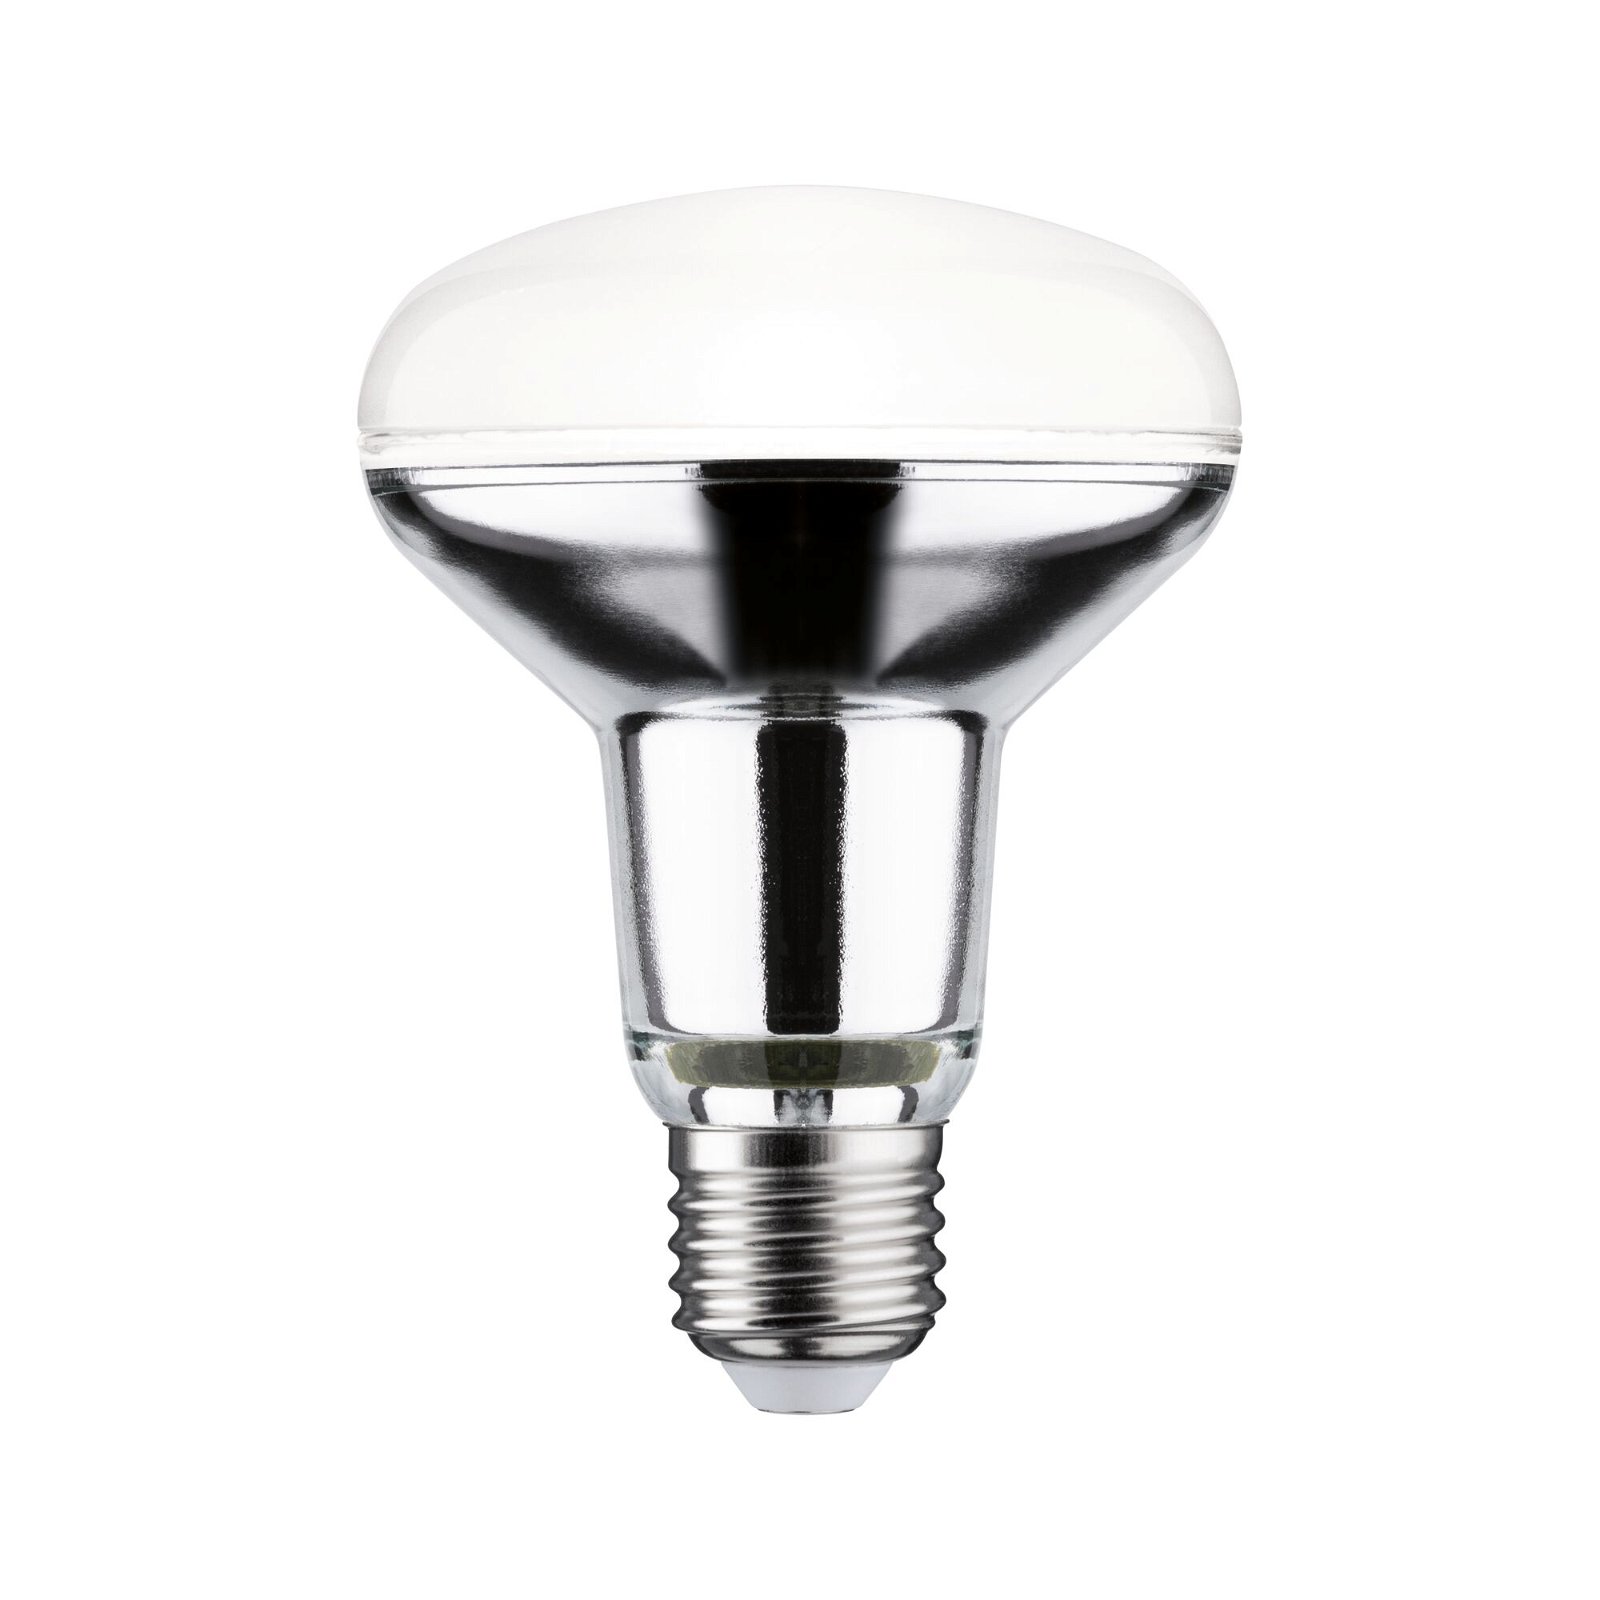 Ampoule E14 Or White Label - Ampoule de 120 Lumen